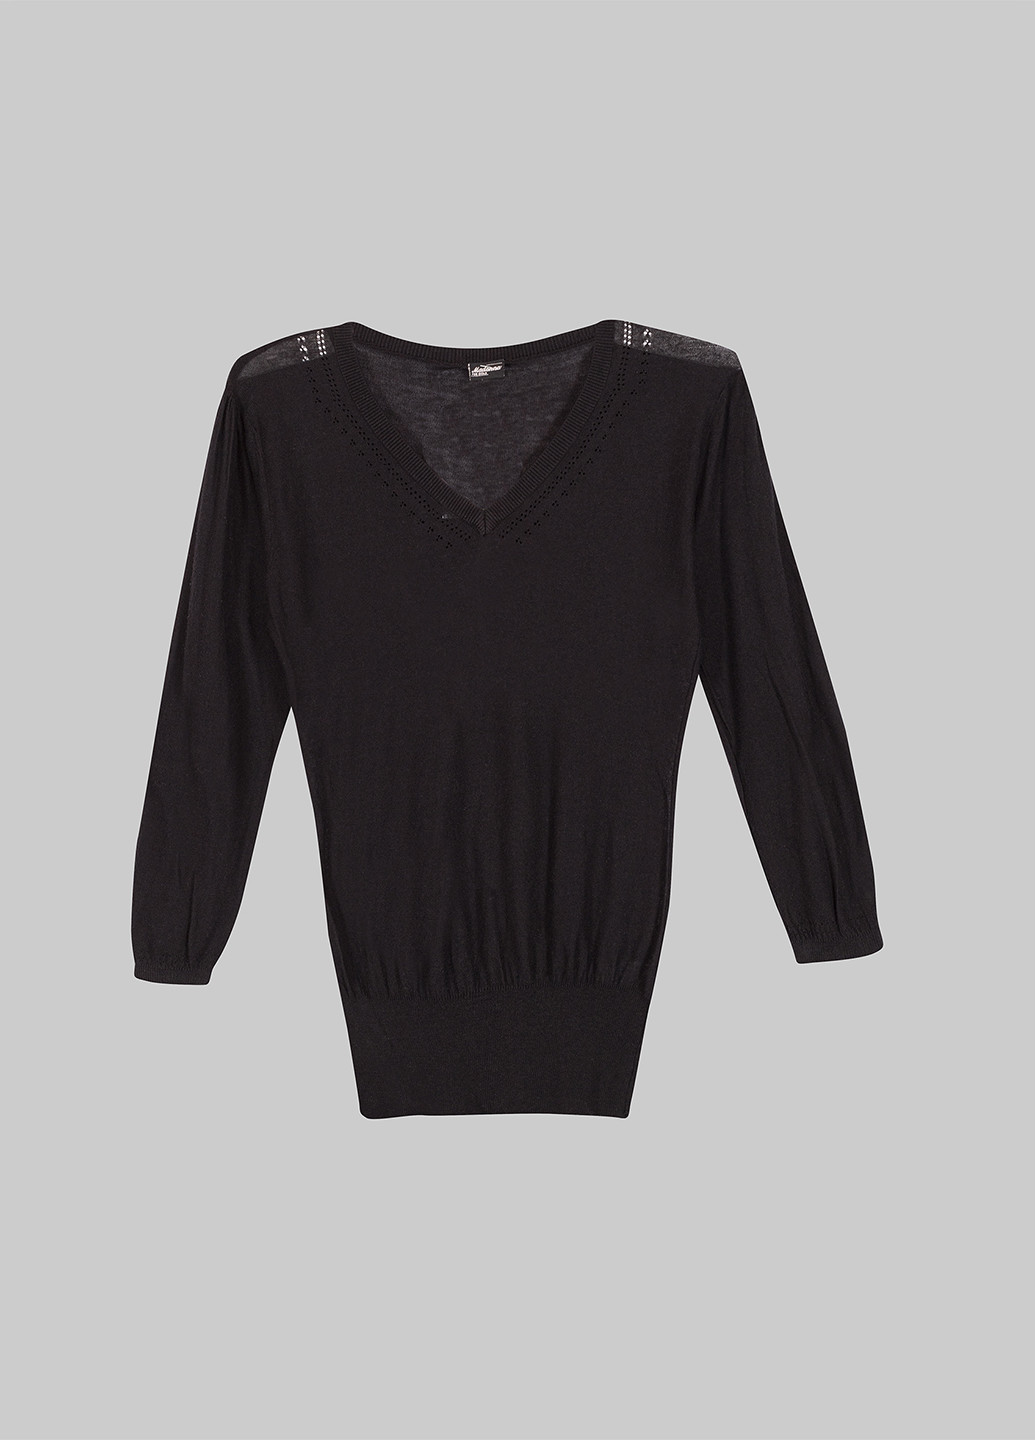 Черный демисезонный пуловер пуловер Madonna